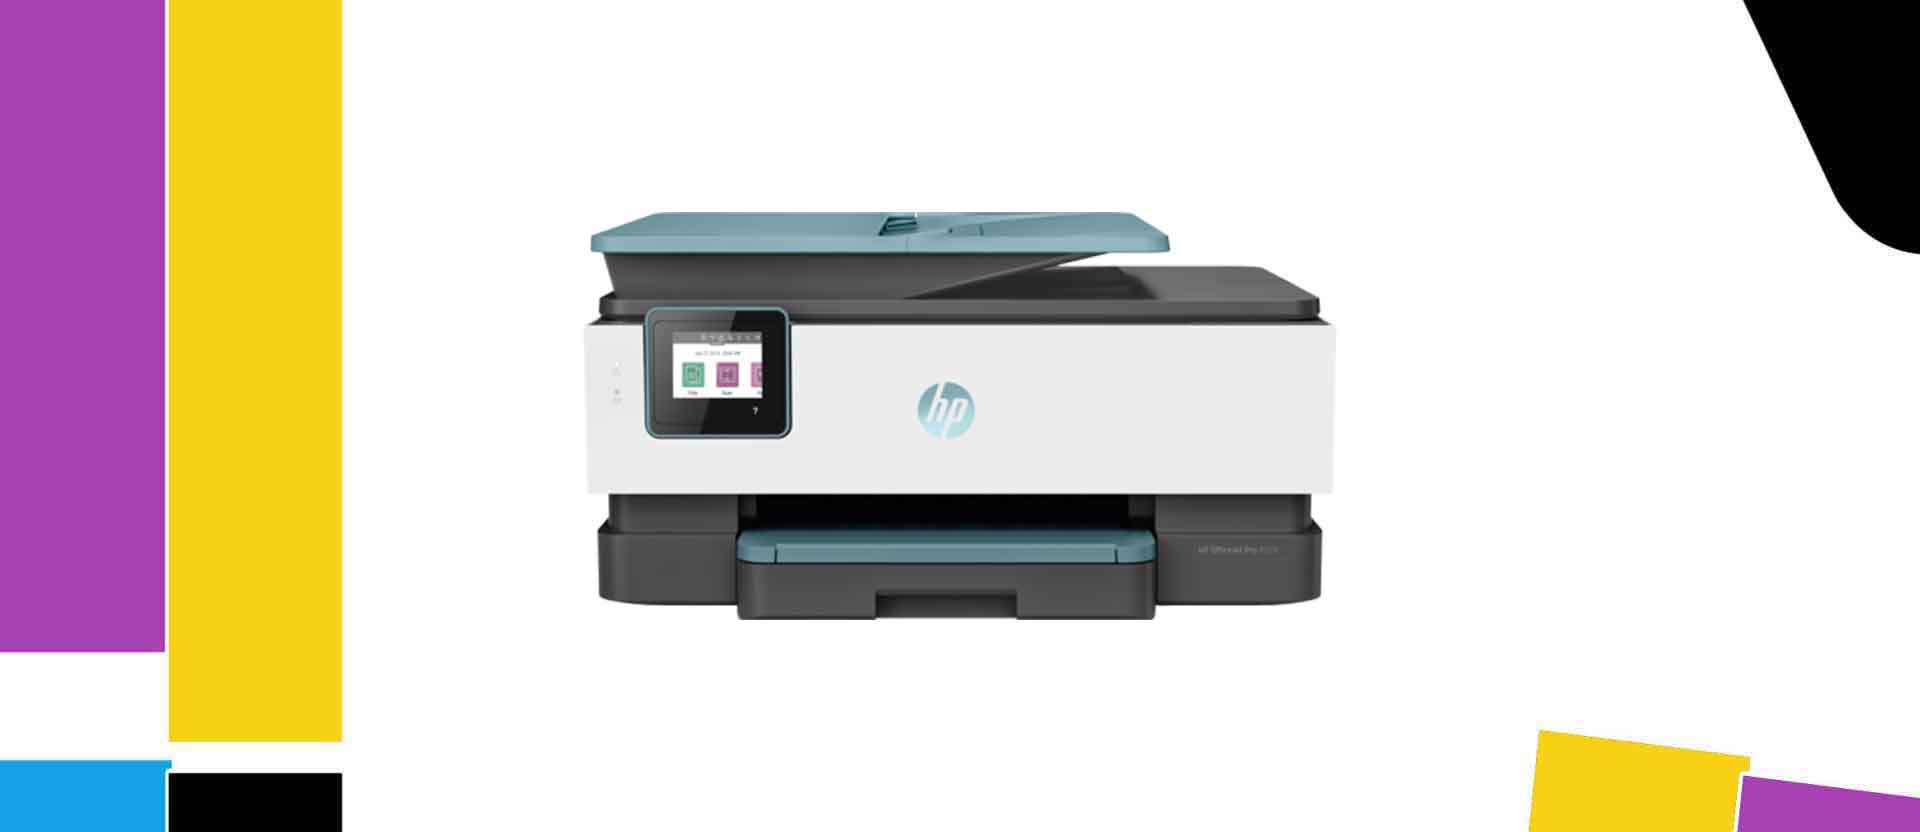 Best HP Officejet Pro 8028 Printer Ink Cartridge